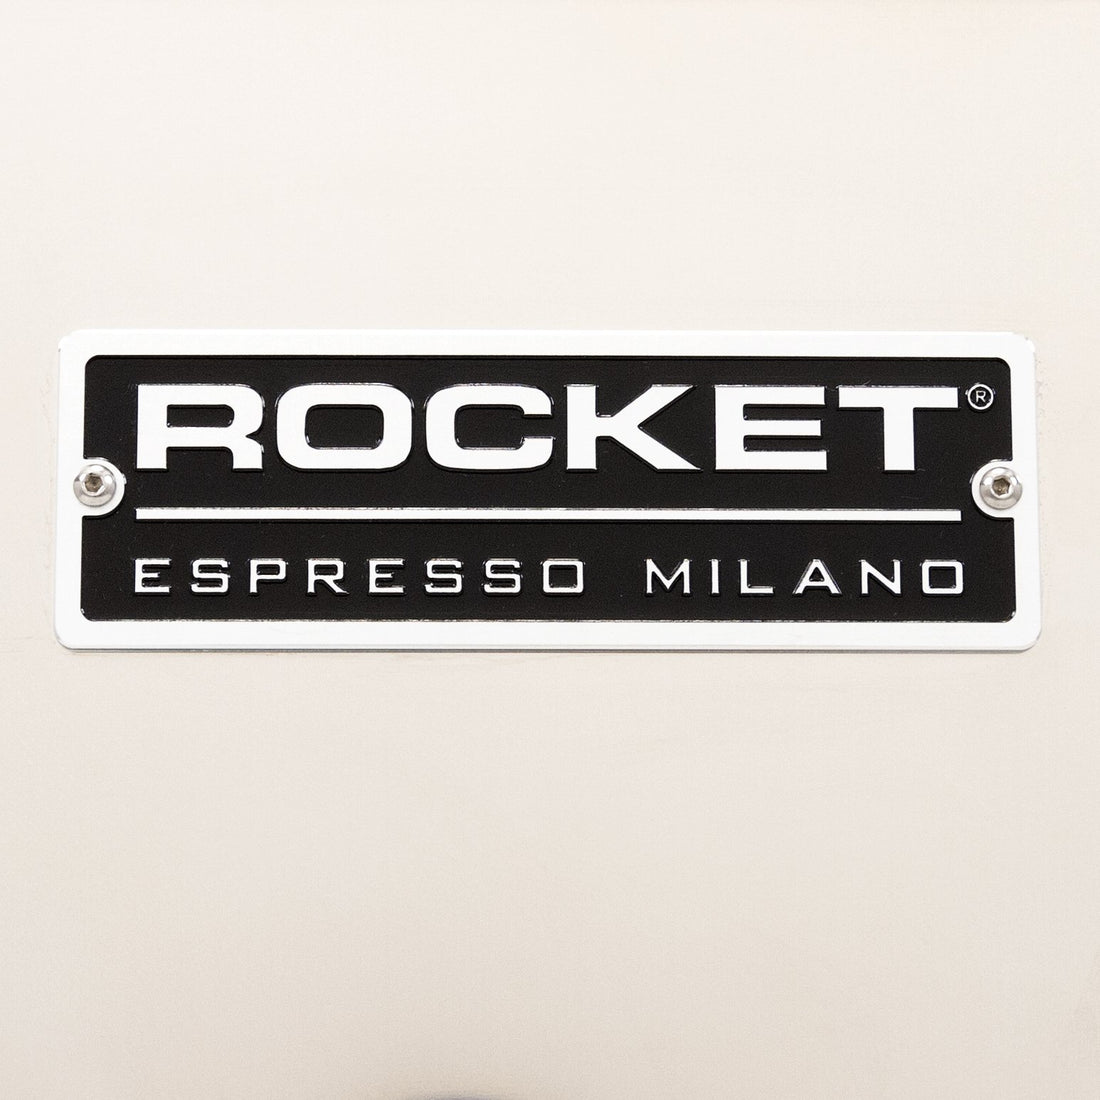 Rocket Espresso Milano badge